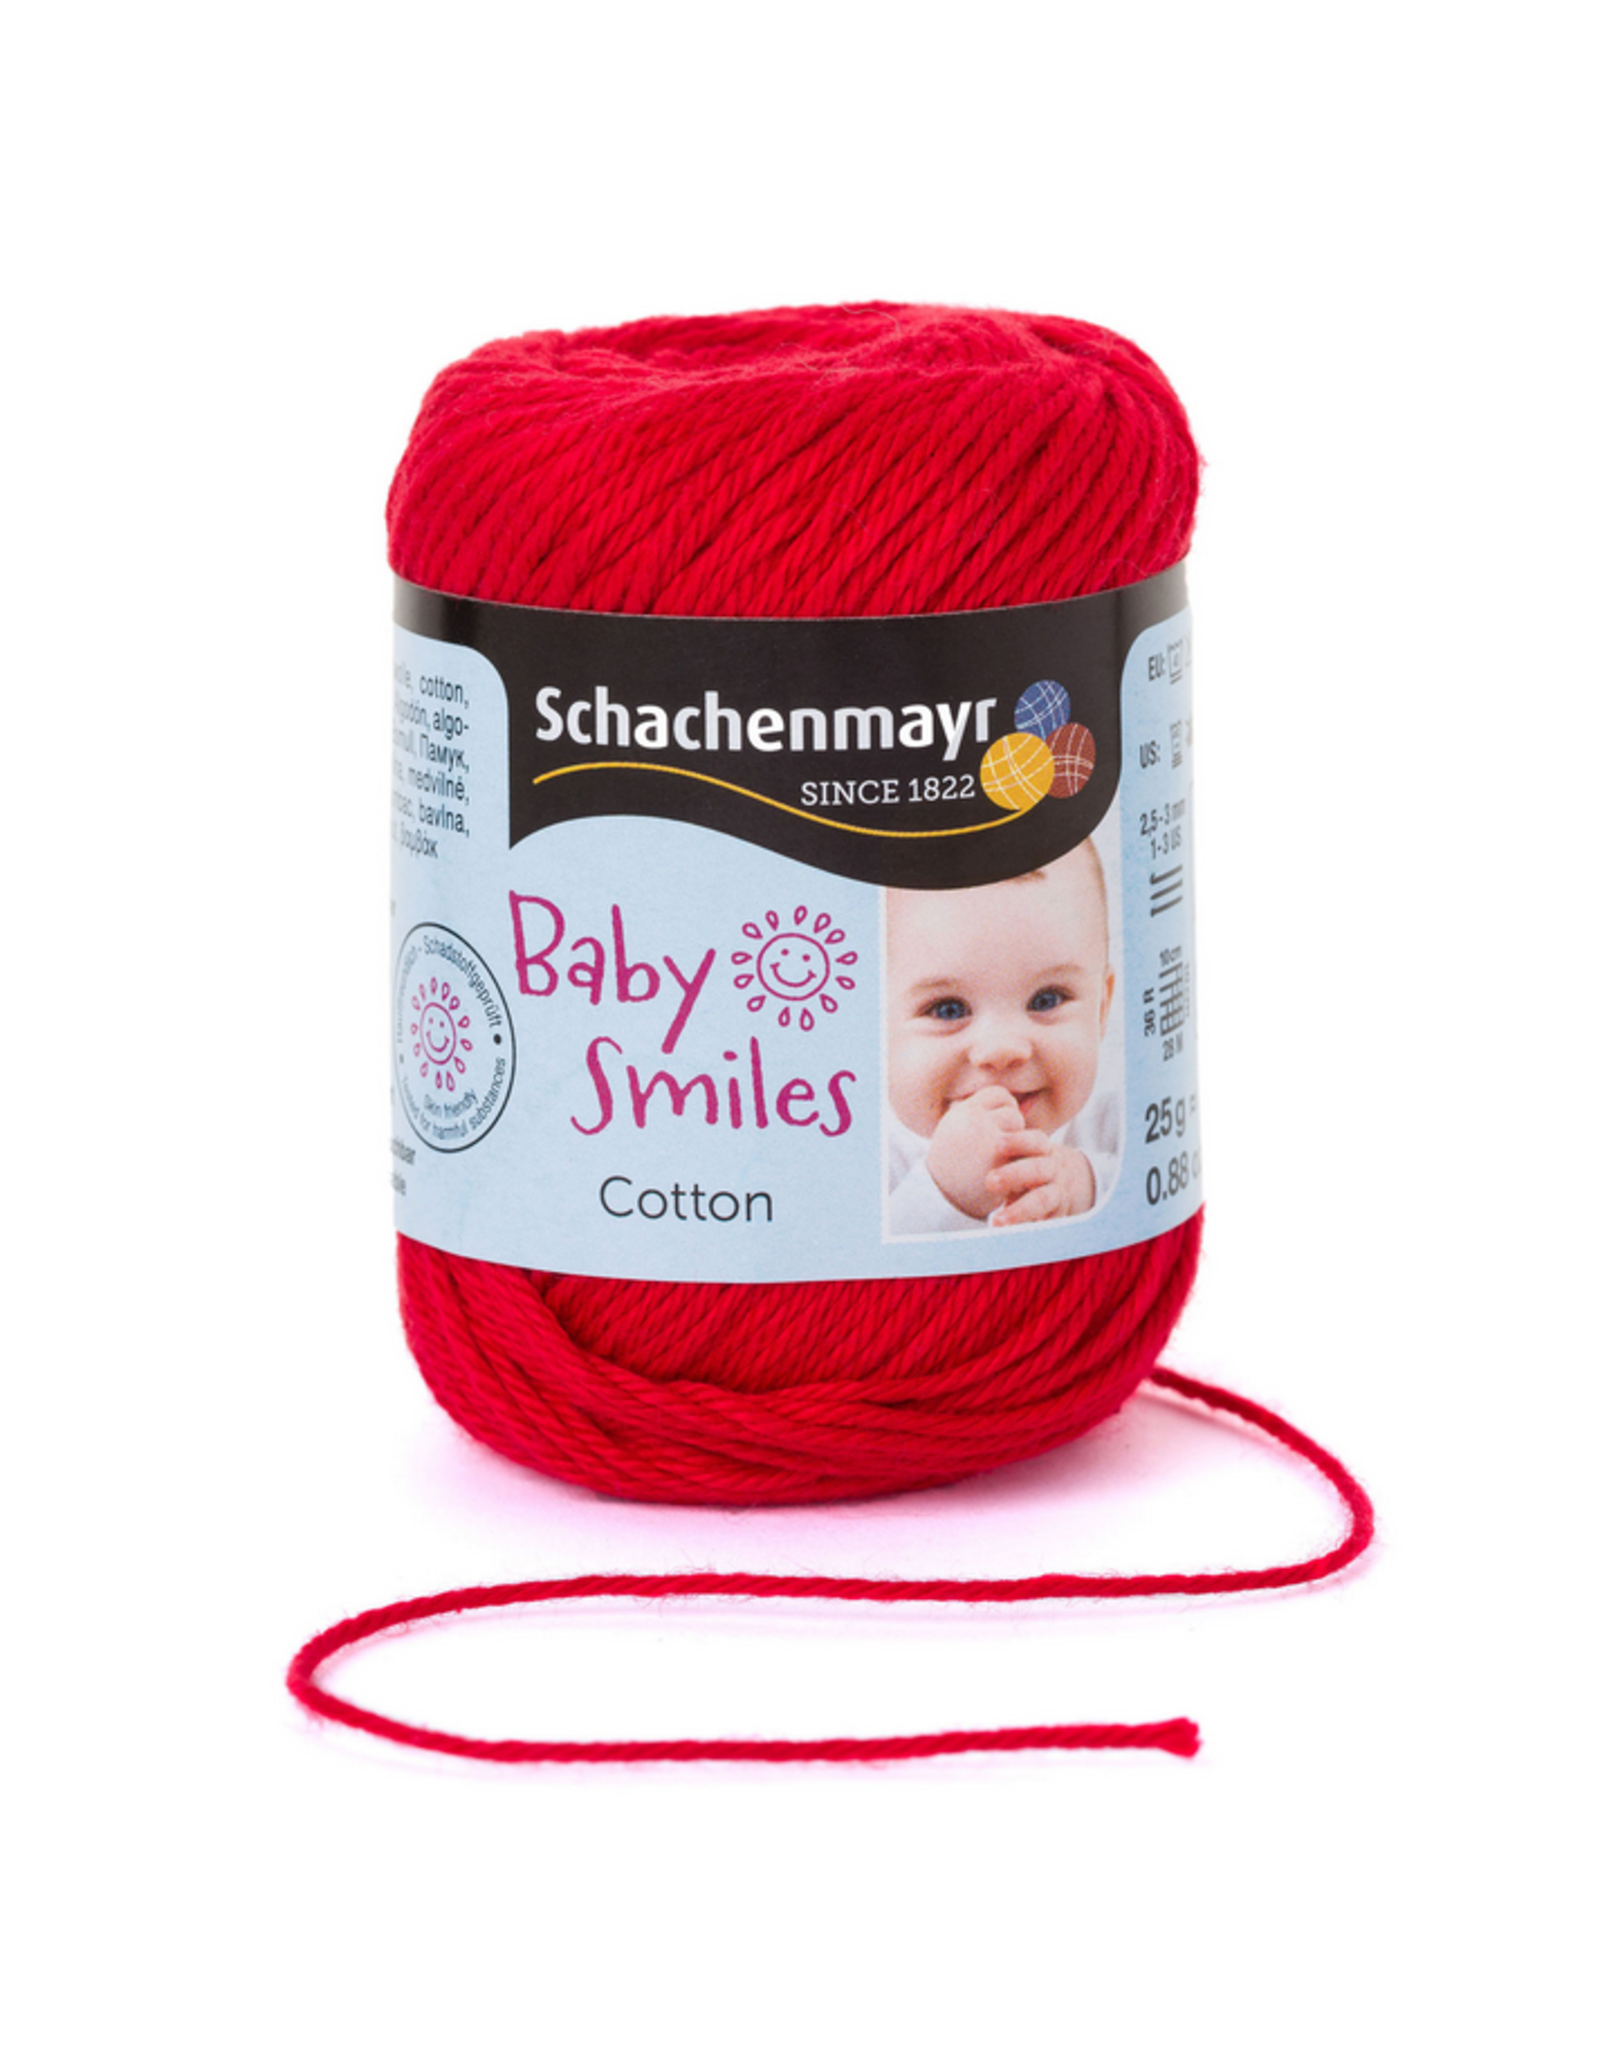 Schachenmayr Schachenmayr Baby Smiles Cotton 1030